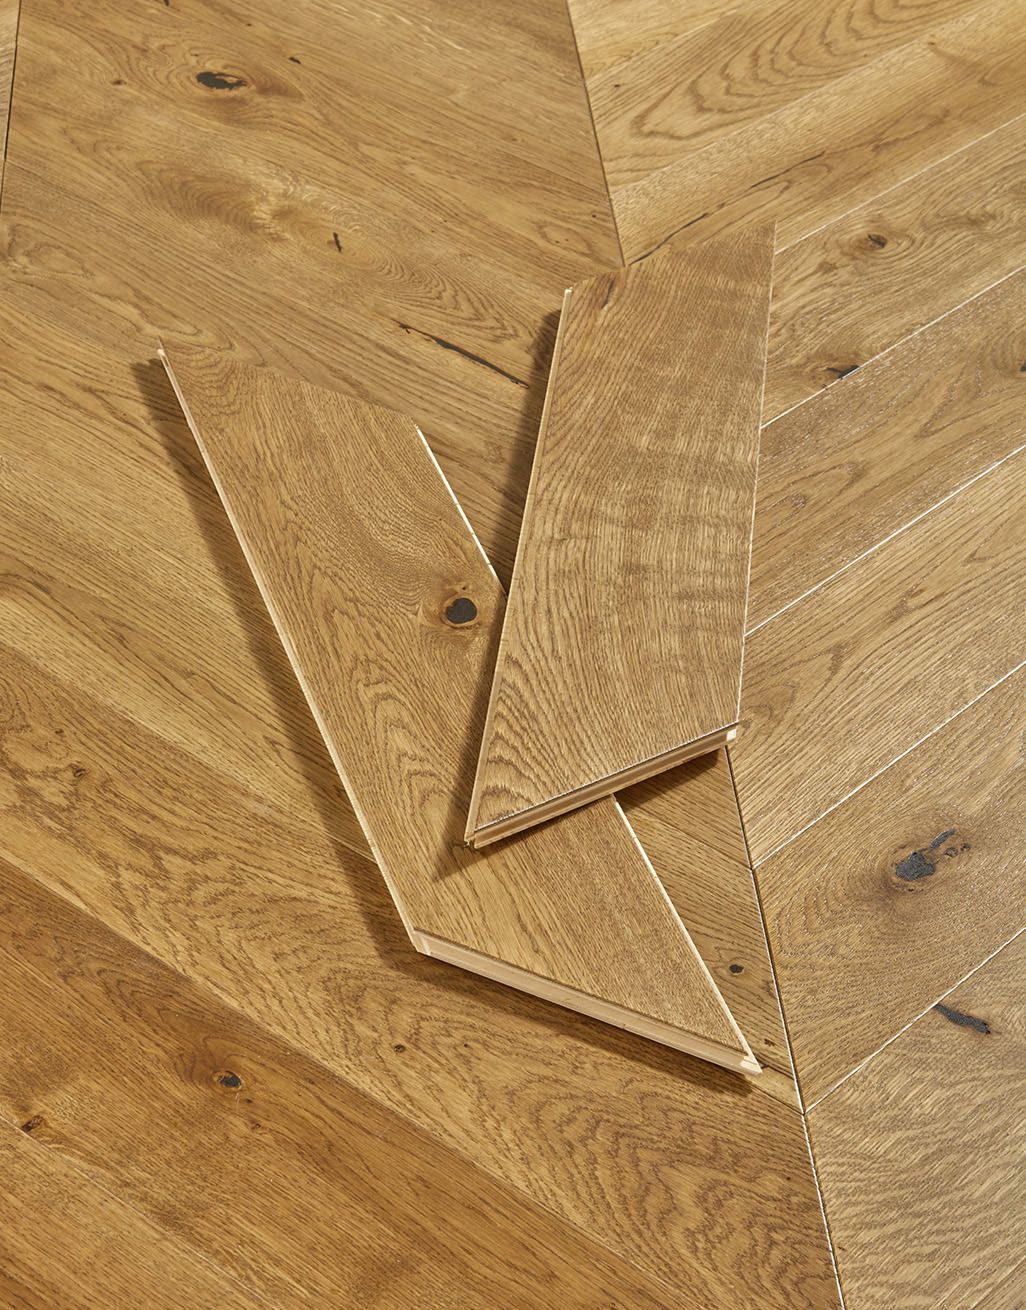 Chelsea Chevron - Woodland Oak Brushed & Lacquered Engineered Wood Flooring 3